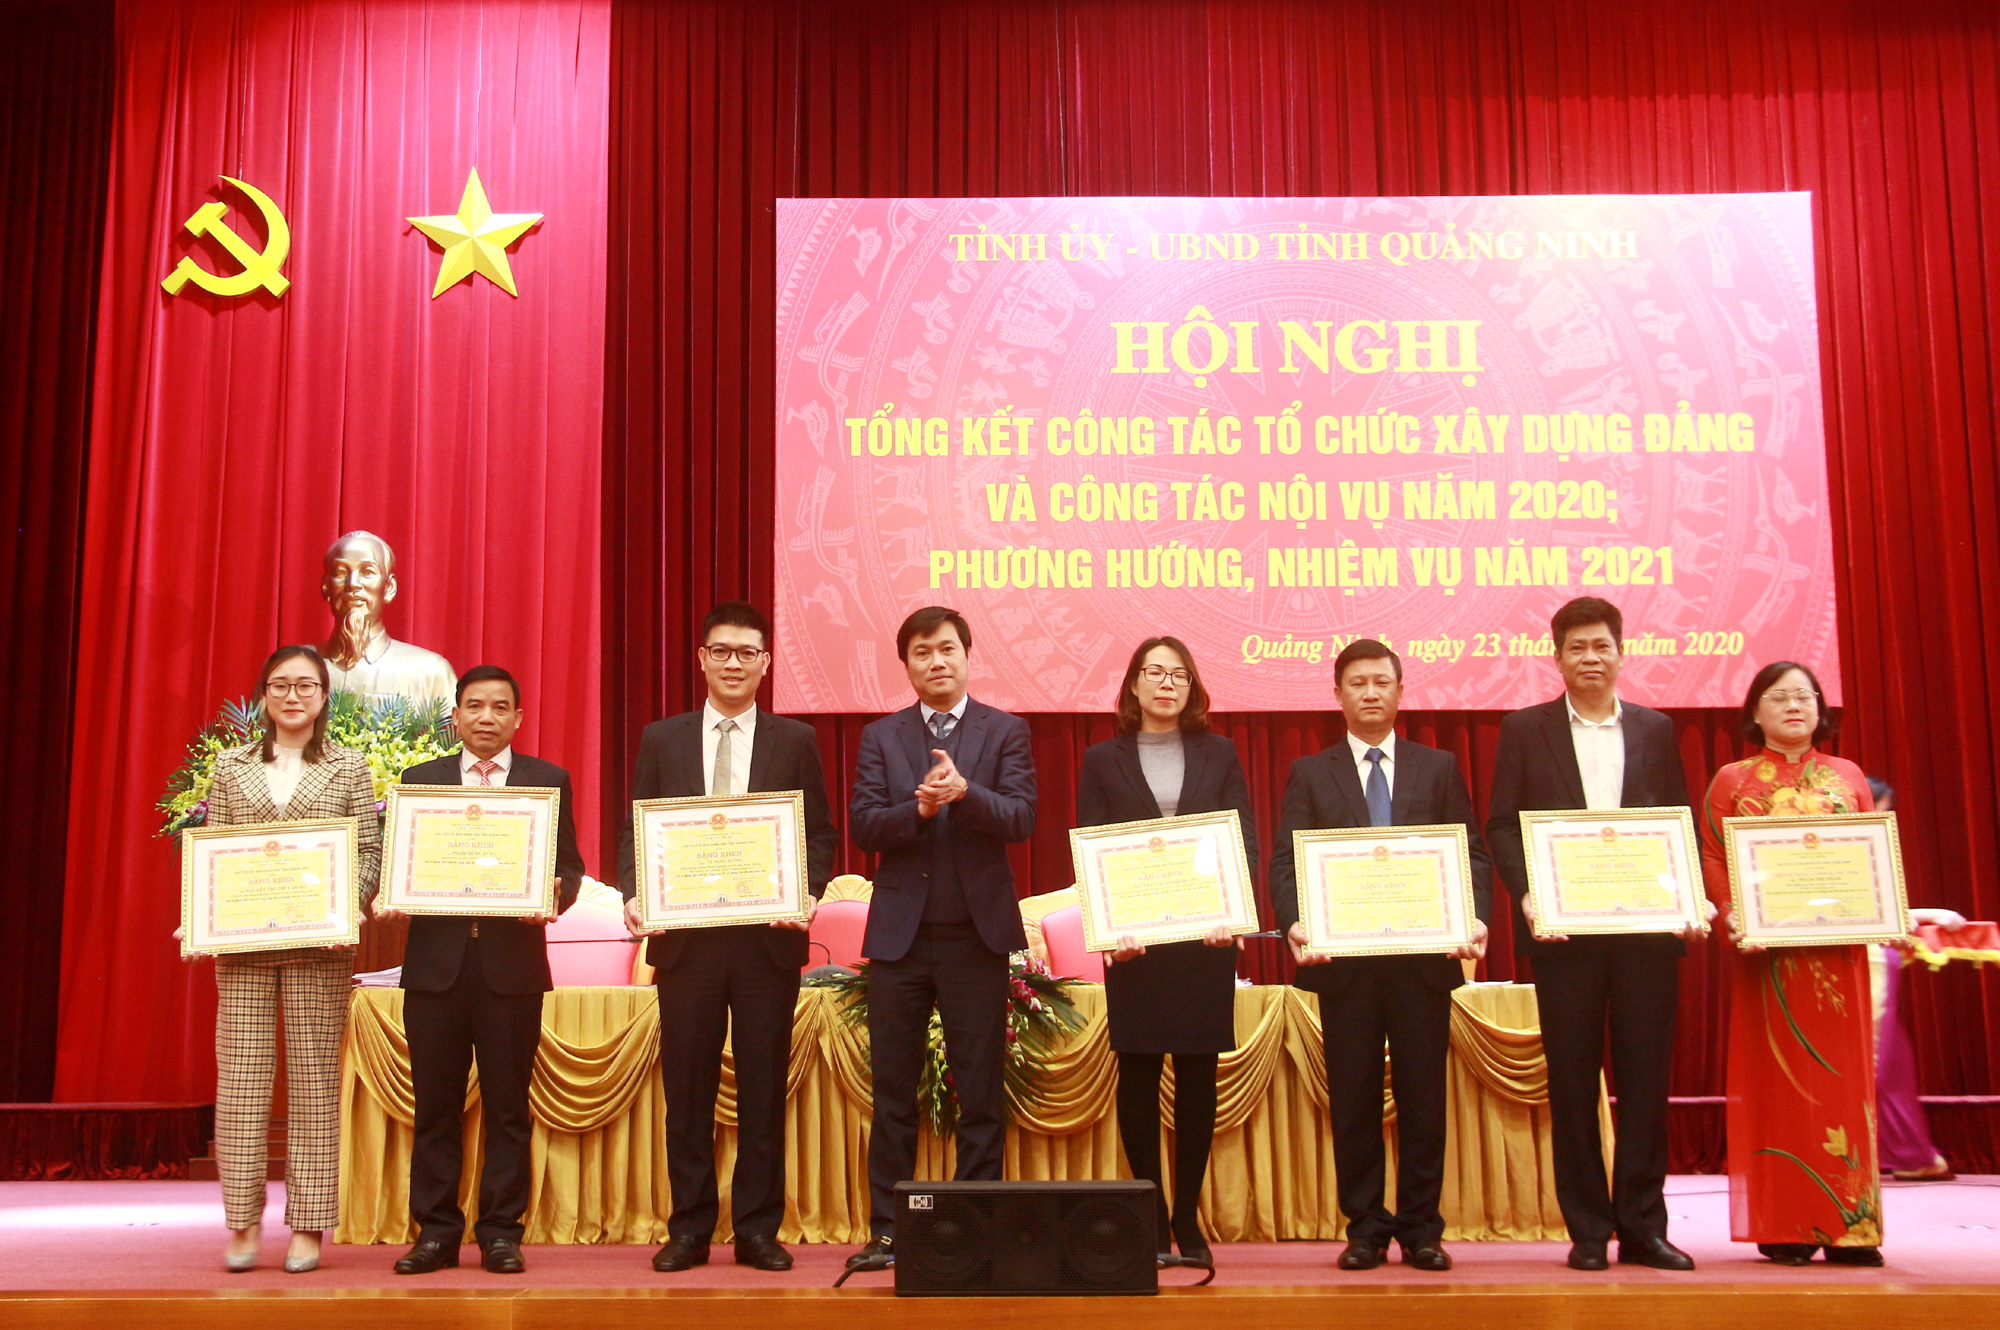 Đồng chí Nguyễn Tường Văn, Chủ tịch UBND tỉnh, tặng Bằng khen của UBND tỉnh cho các cá nhân có thành tích xuất sắc.